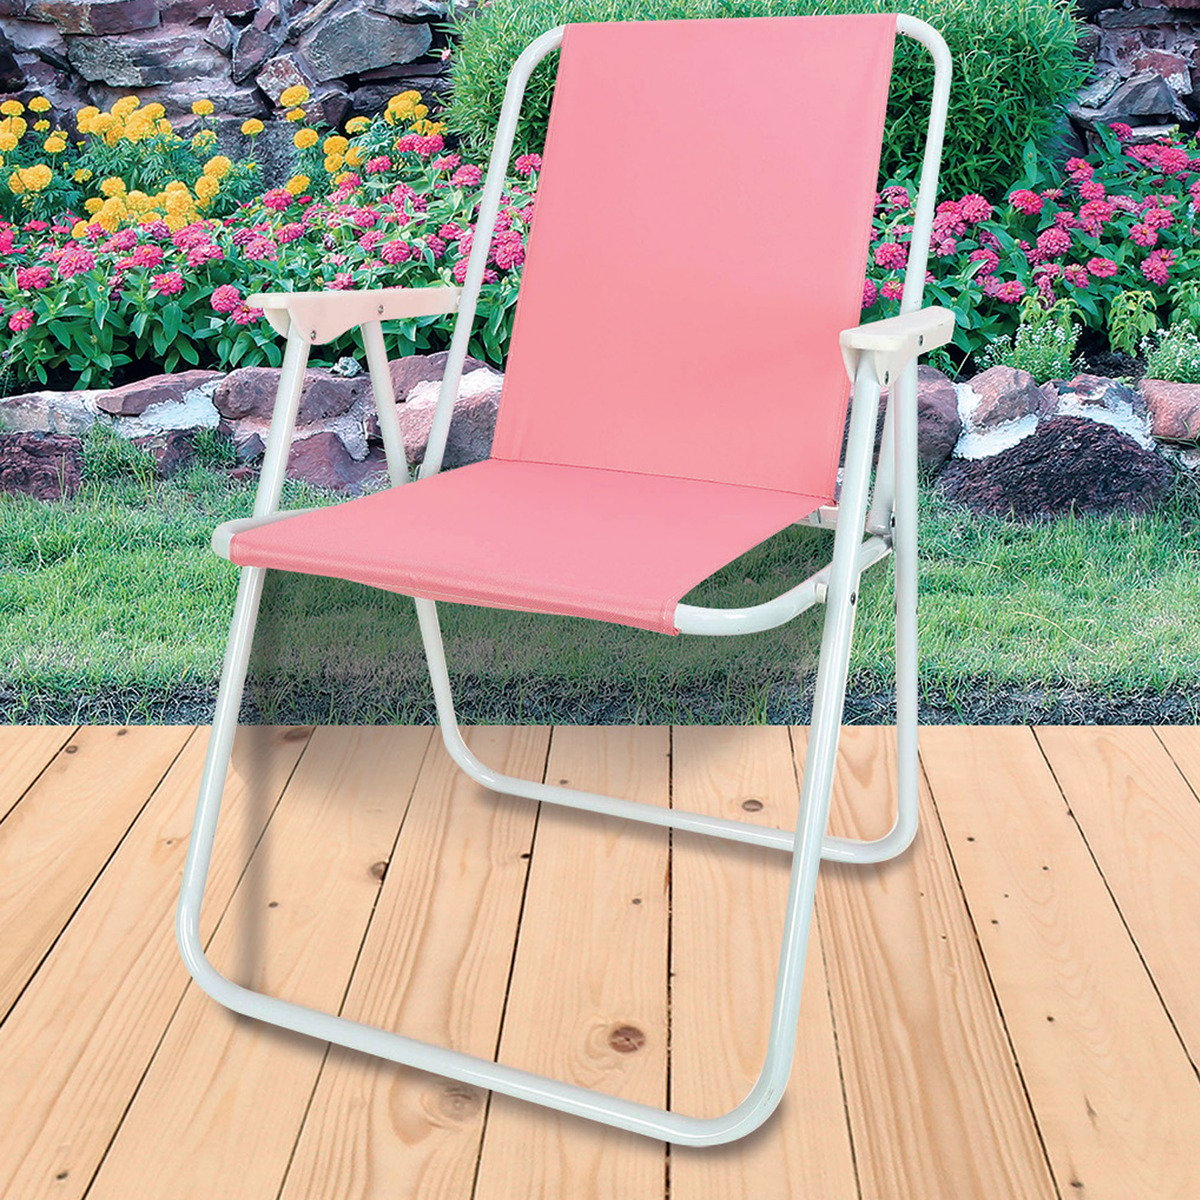 اشتري قم بشراء ريلاكس كرسي شاطئ قابل للطي YM-211 ألوان متنوعة Online at Best Price من الموقع - من لولو هايبر ماركت Folding Chairs&Table في الكويت